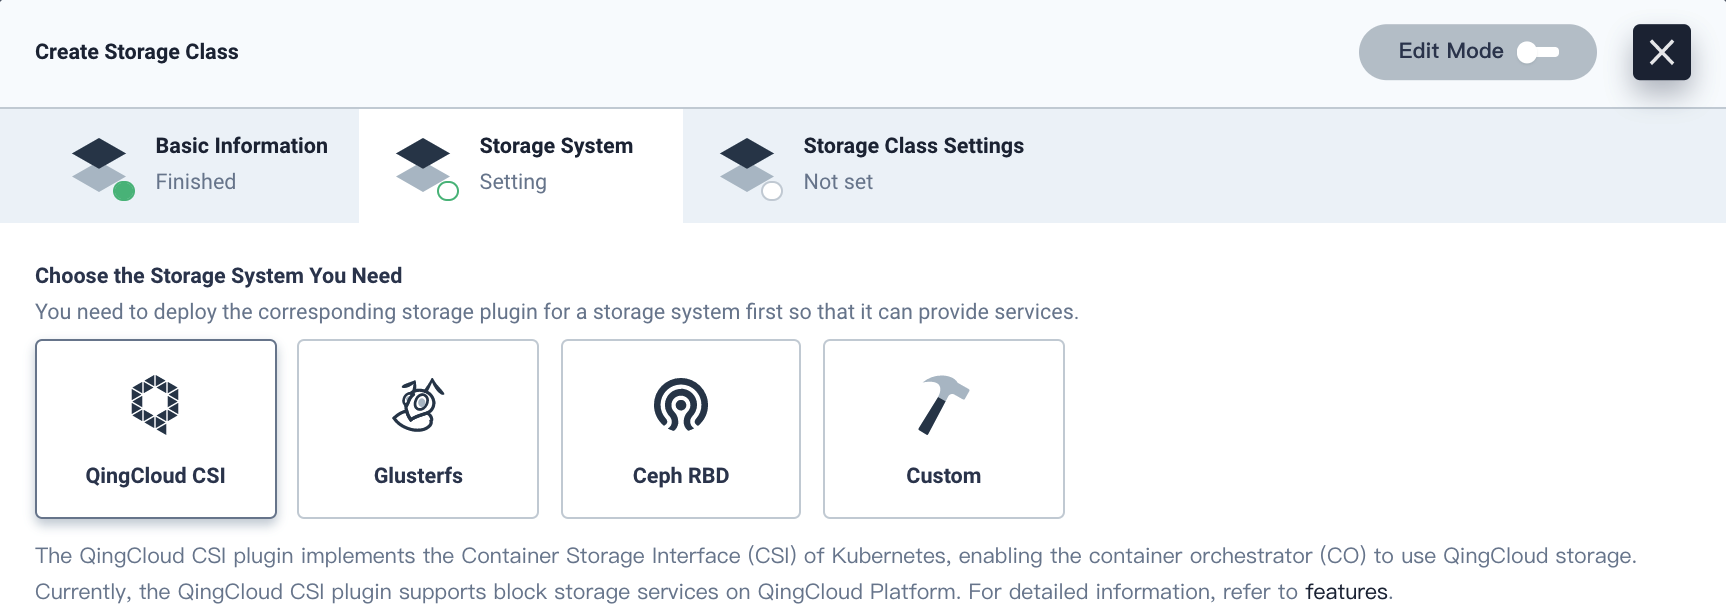 create-storage-class-storage-system